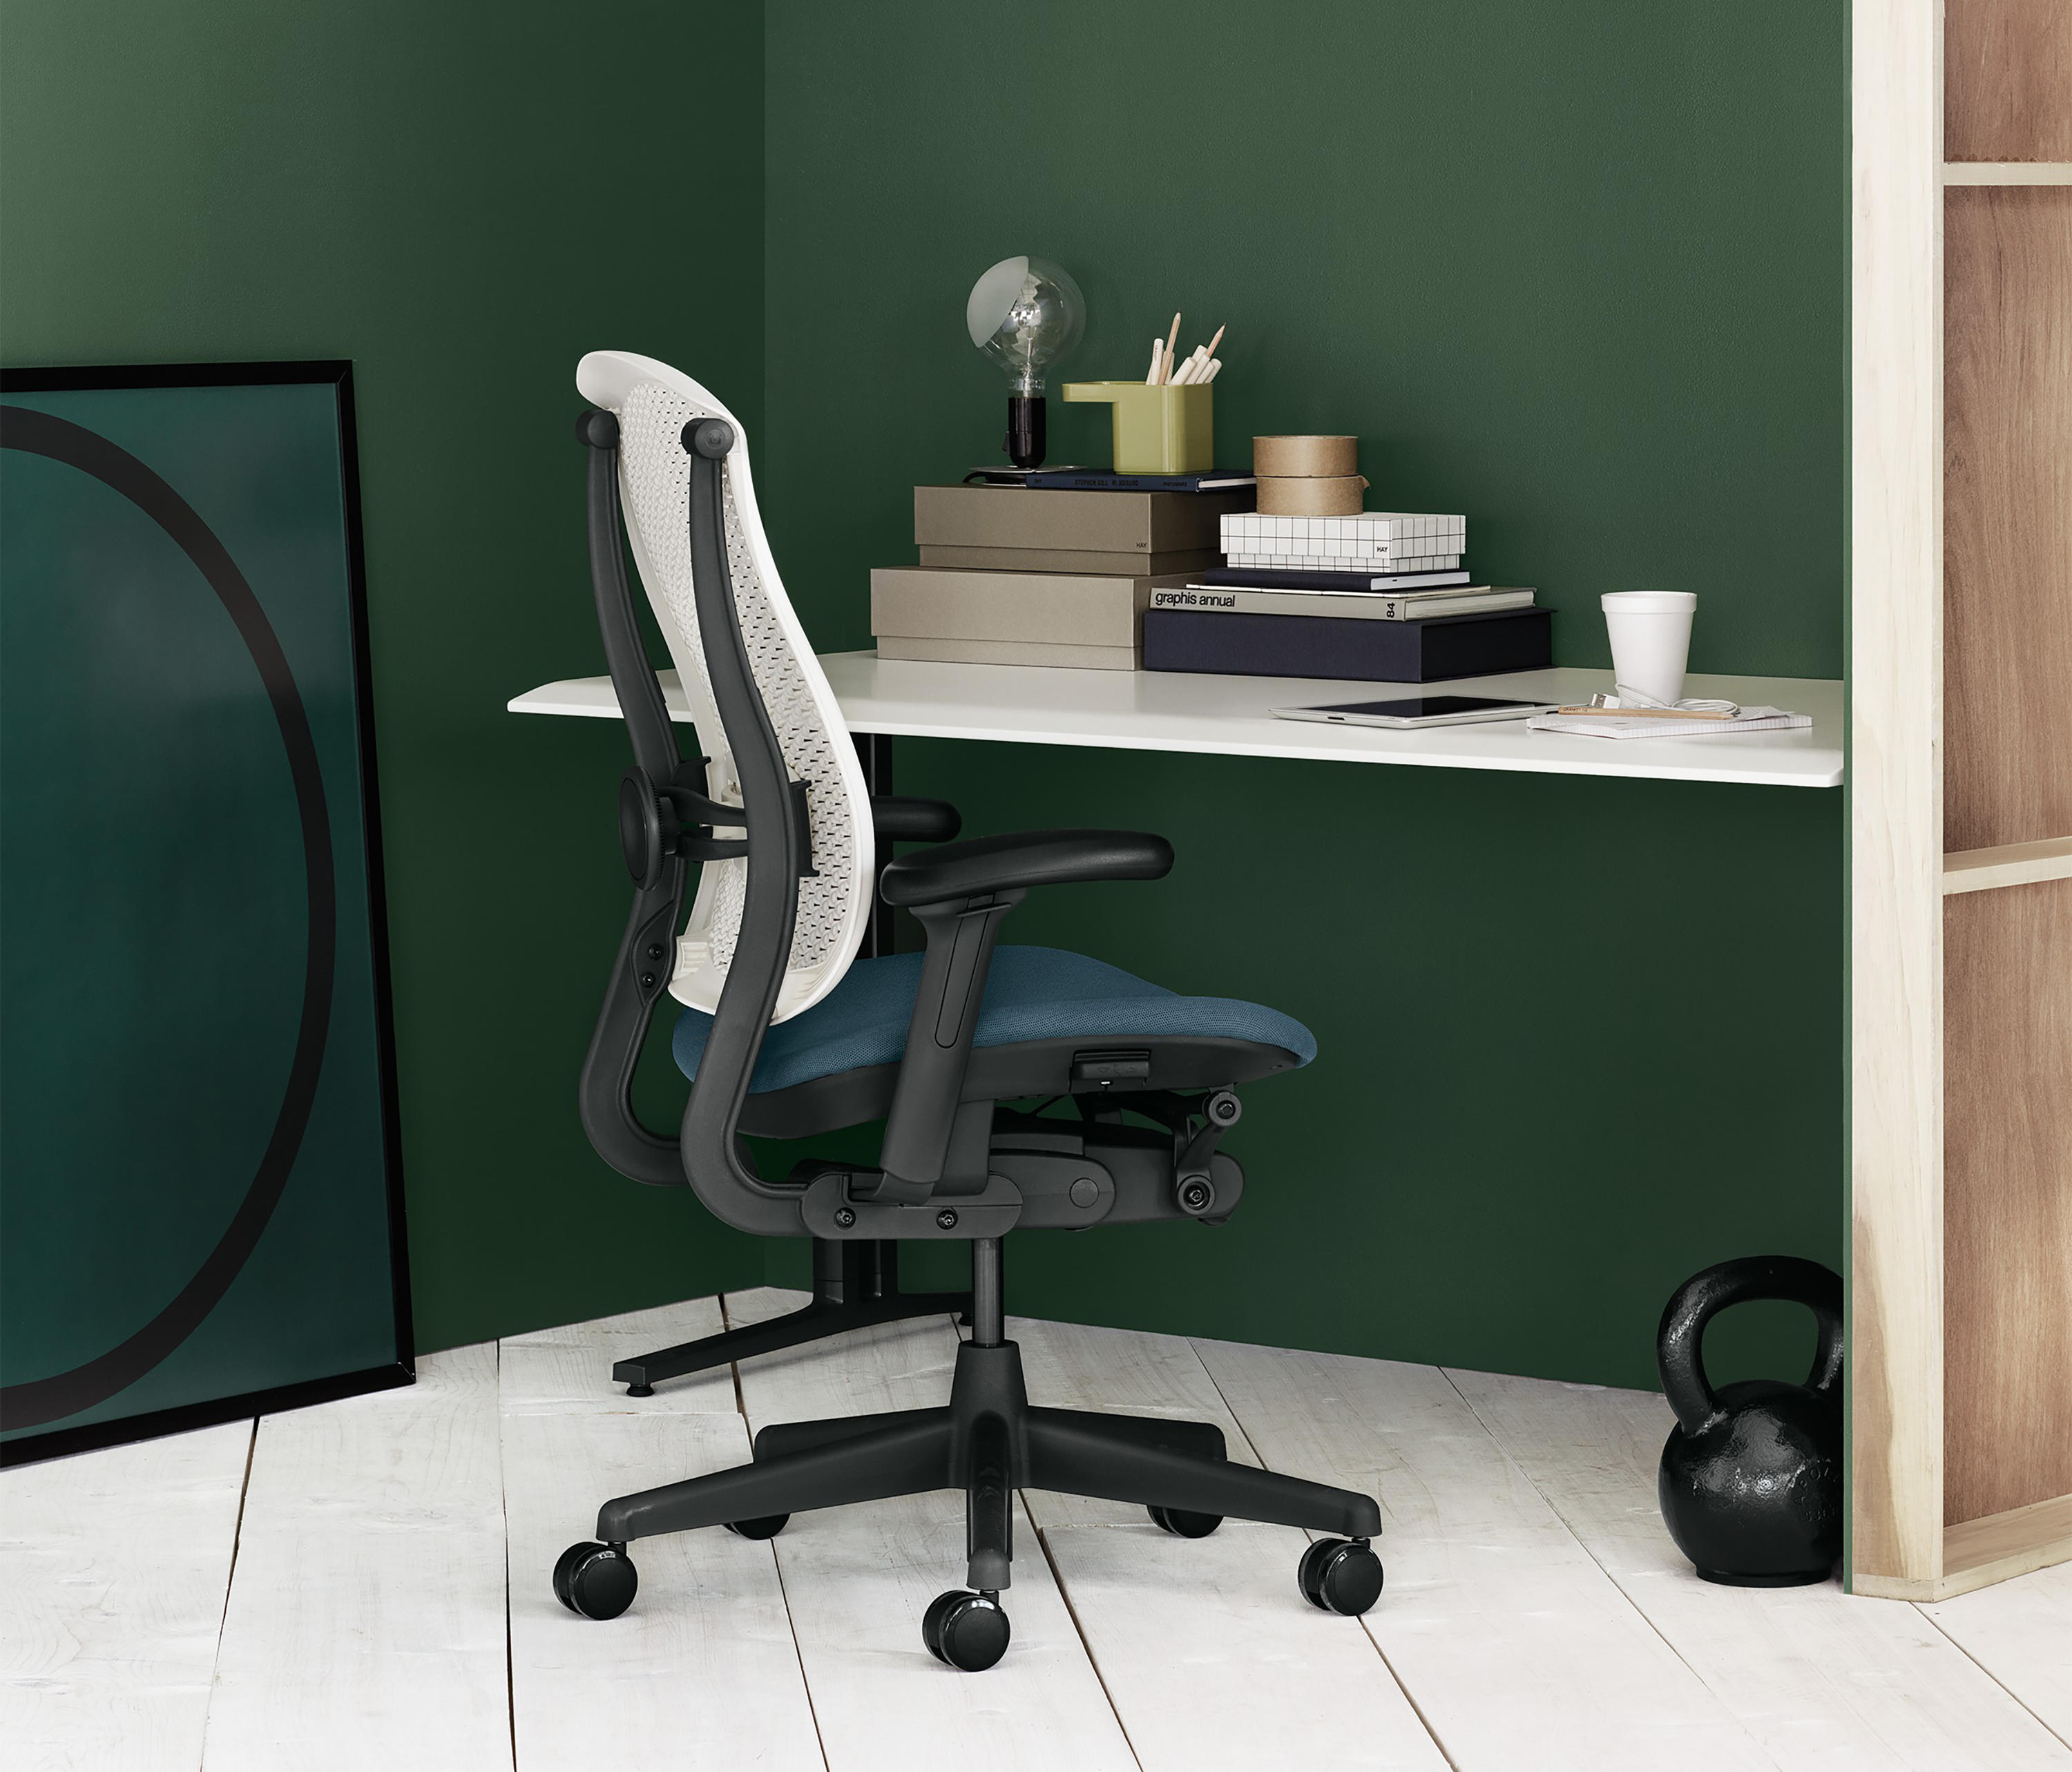 Herman Miller - Mobiliario moderno para la oficina y el hogar